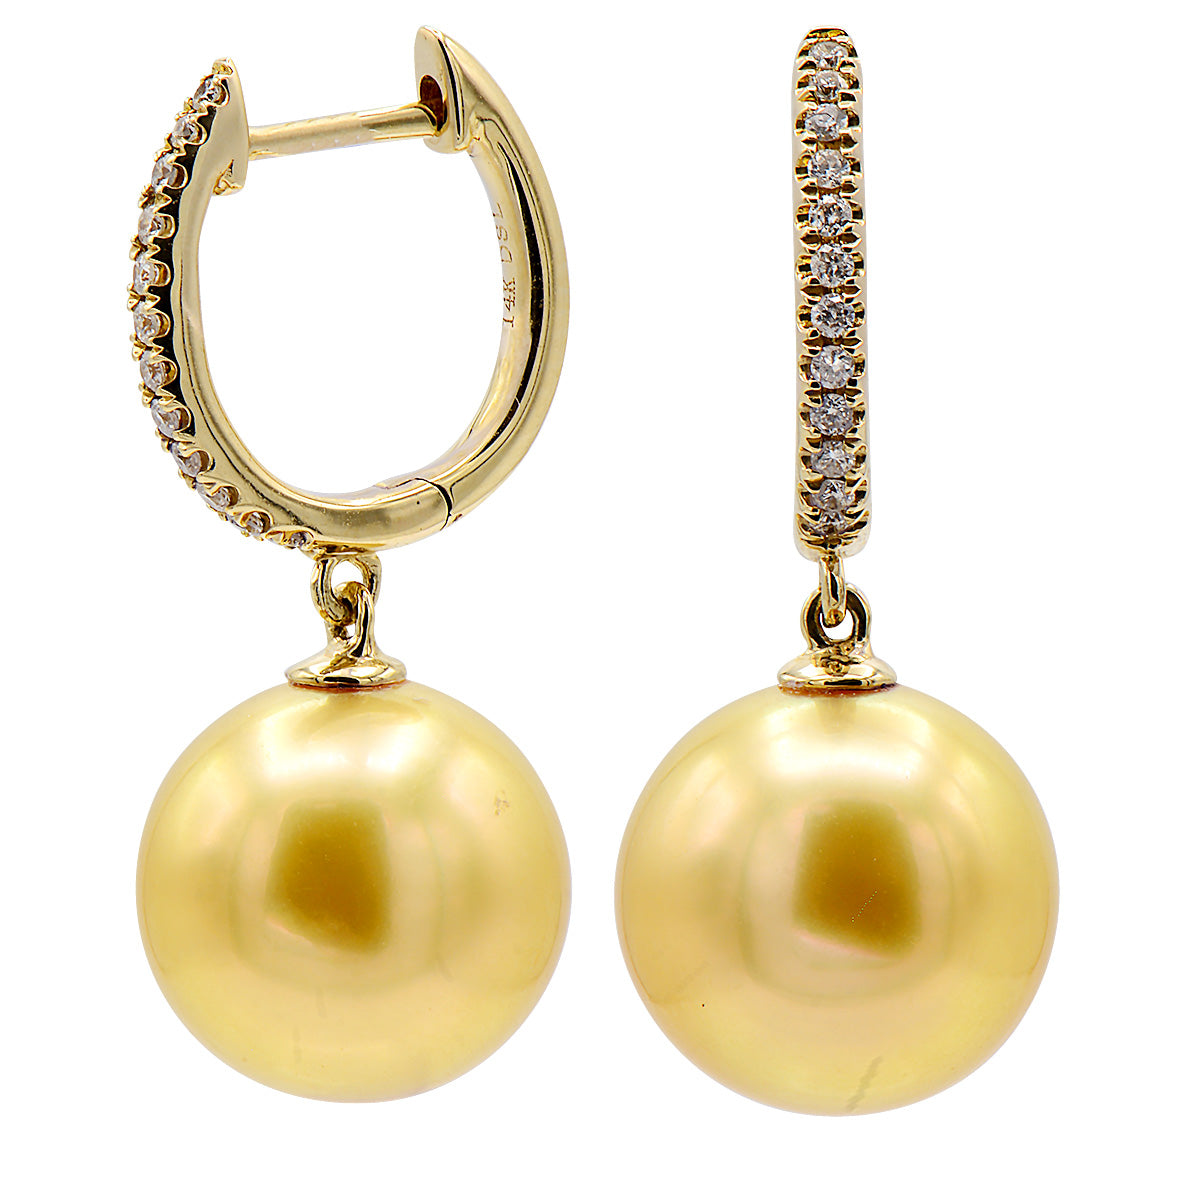 14KY Golden South Sea Pearl Earrings, 12-13mm